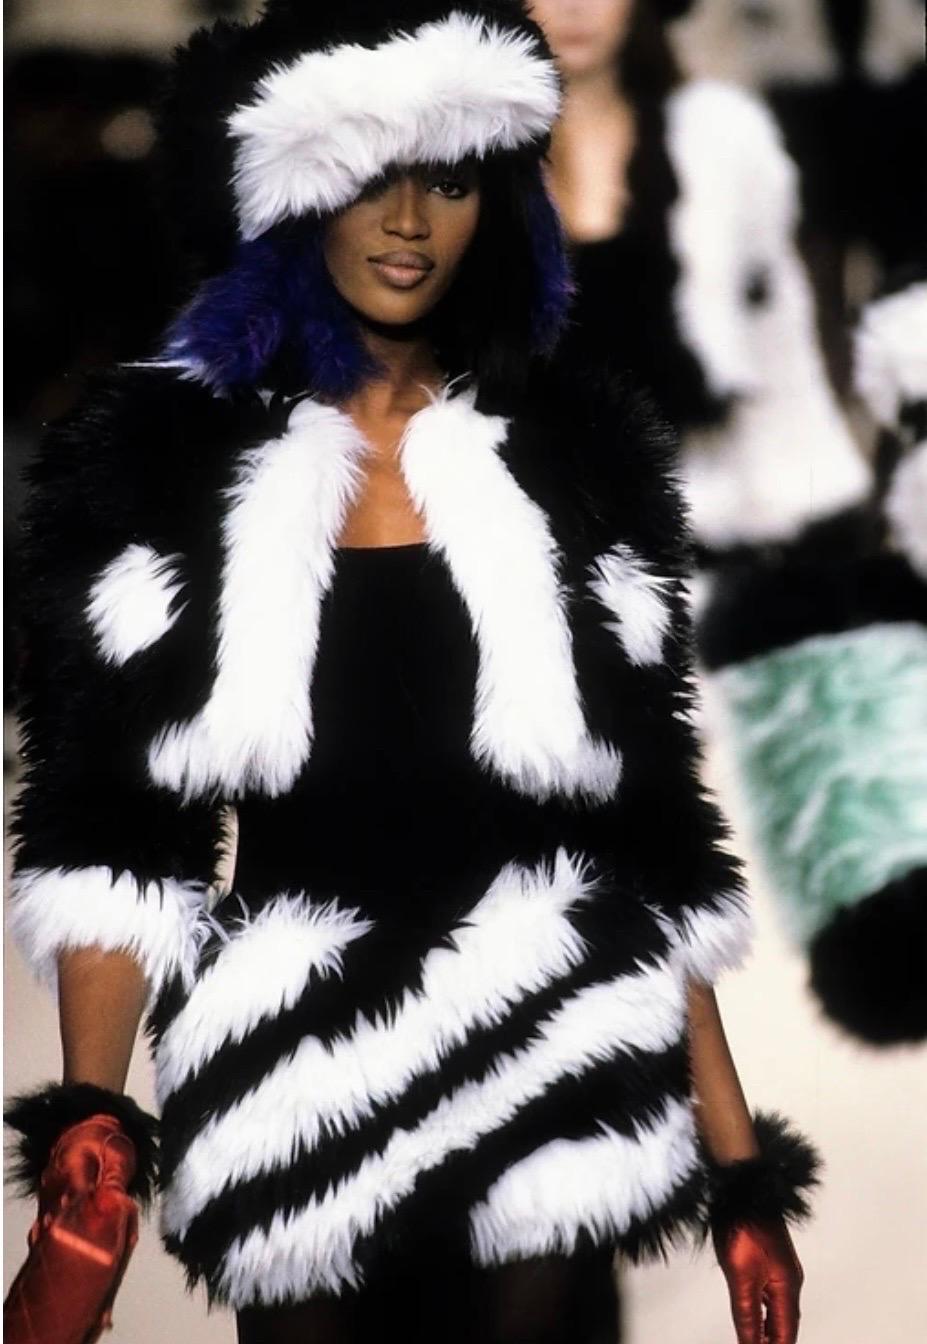 Faux v fur — fashion's hairiest debate